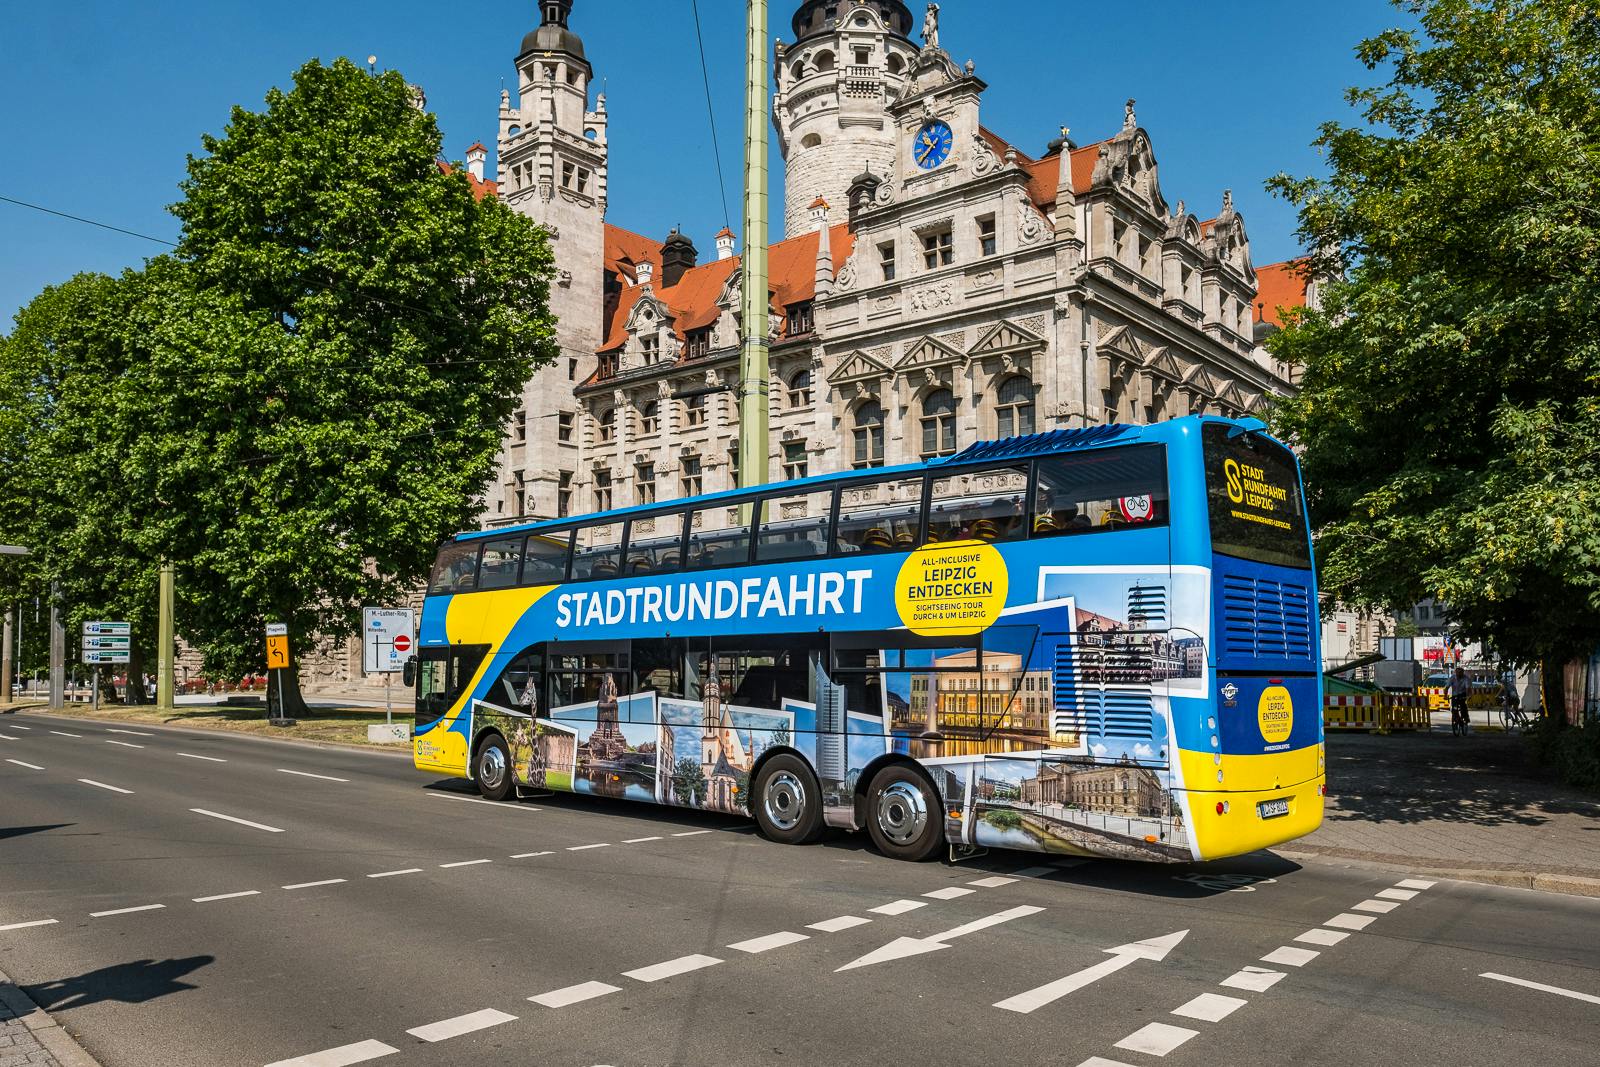 Grande city tour em Leipzig com o ônibus hop-on hop-off